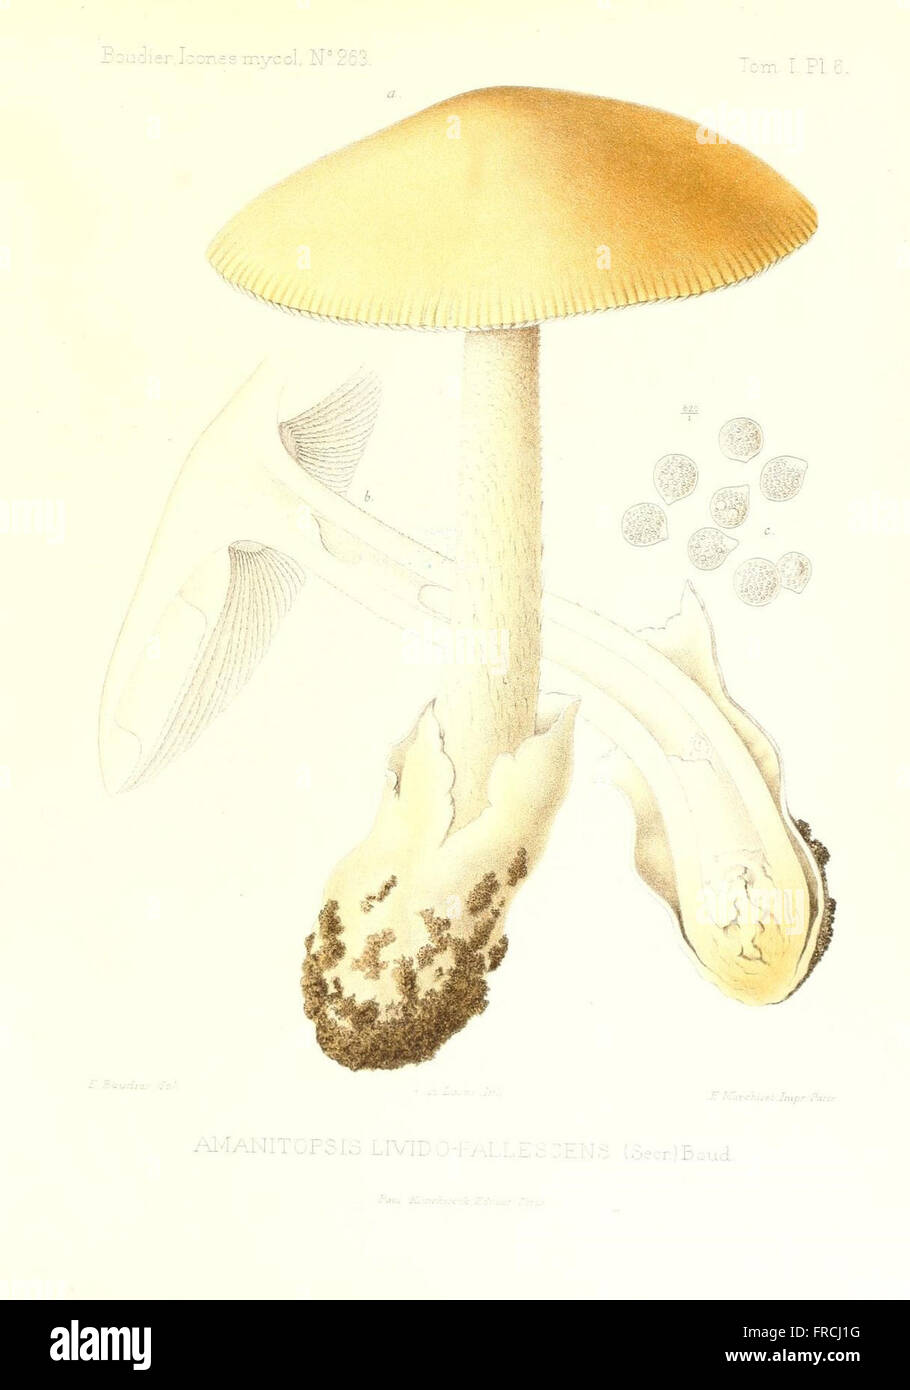 Icones mycologicC3A6, ou Iconographie des champignons de France principalement Discomycetes (Pl. 6) Stock Photo